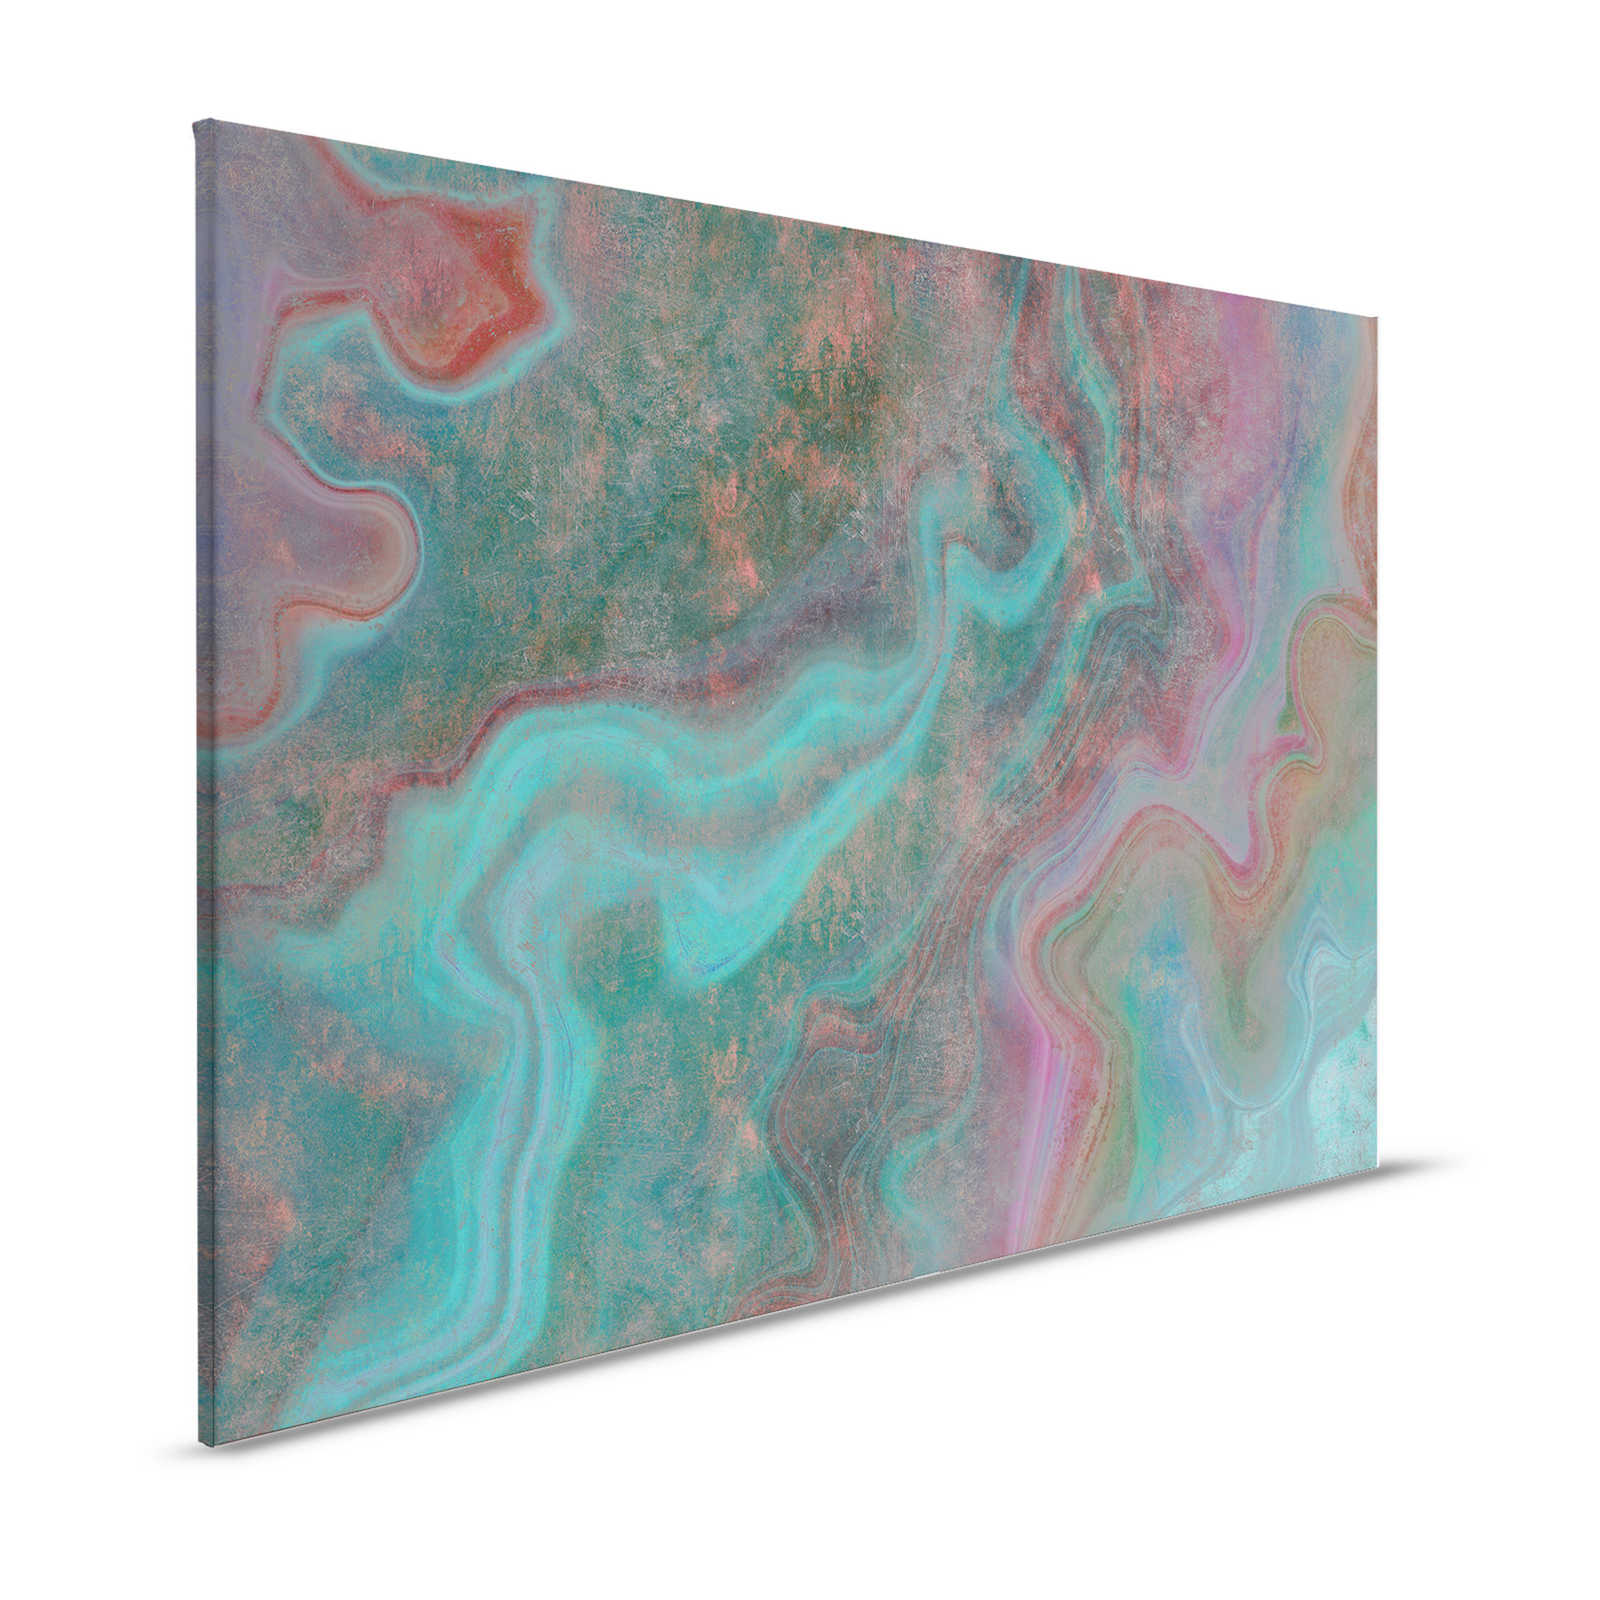 Marmer 3 - Canvas schilderij met krasstructuur in kleurrijke marmerlook als highlight - 1.20 m x 0.80 m
